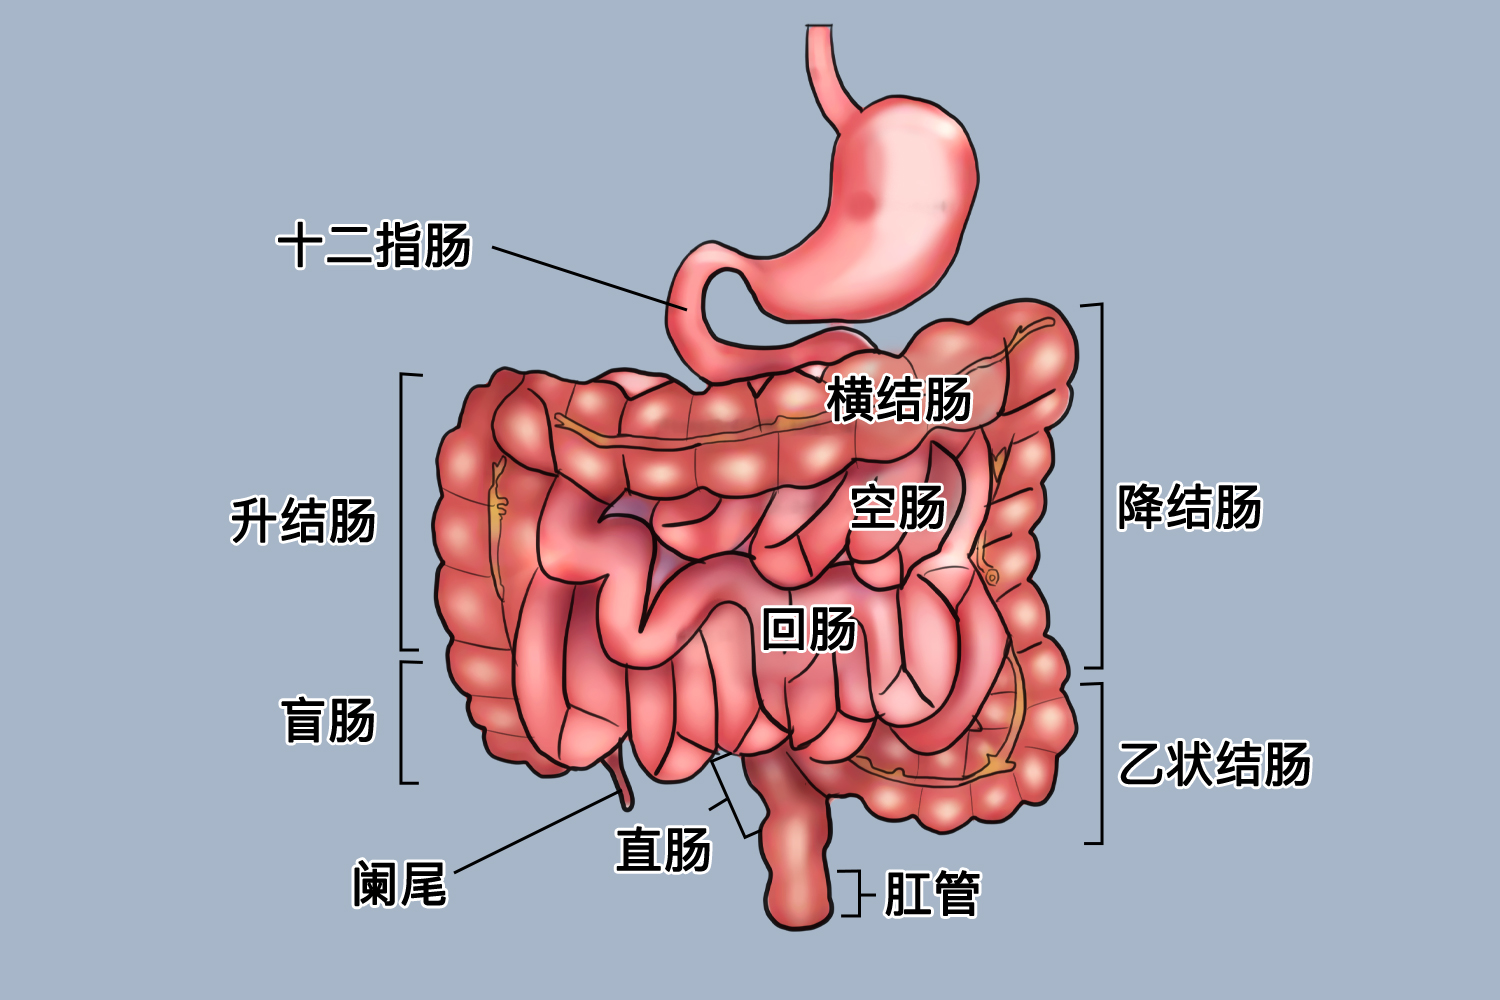 肠道结构图生理作用小肠是进行消化和吸收的重要器官,并具有某些内